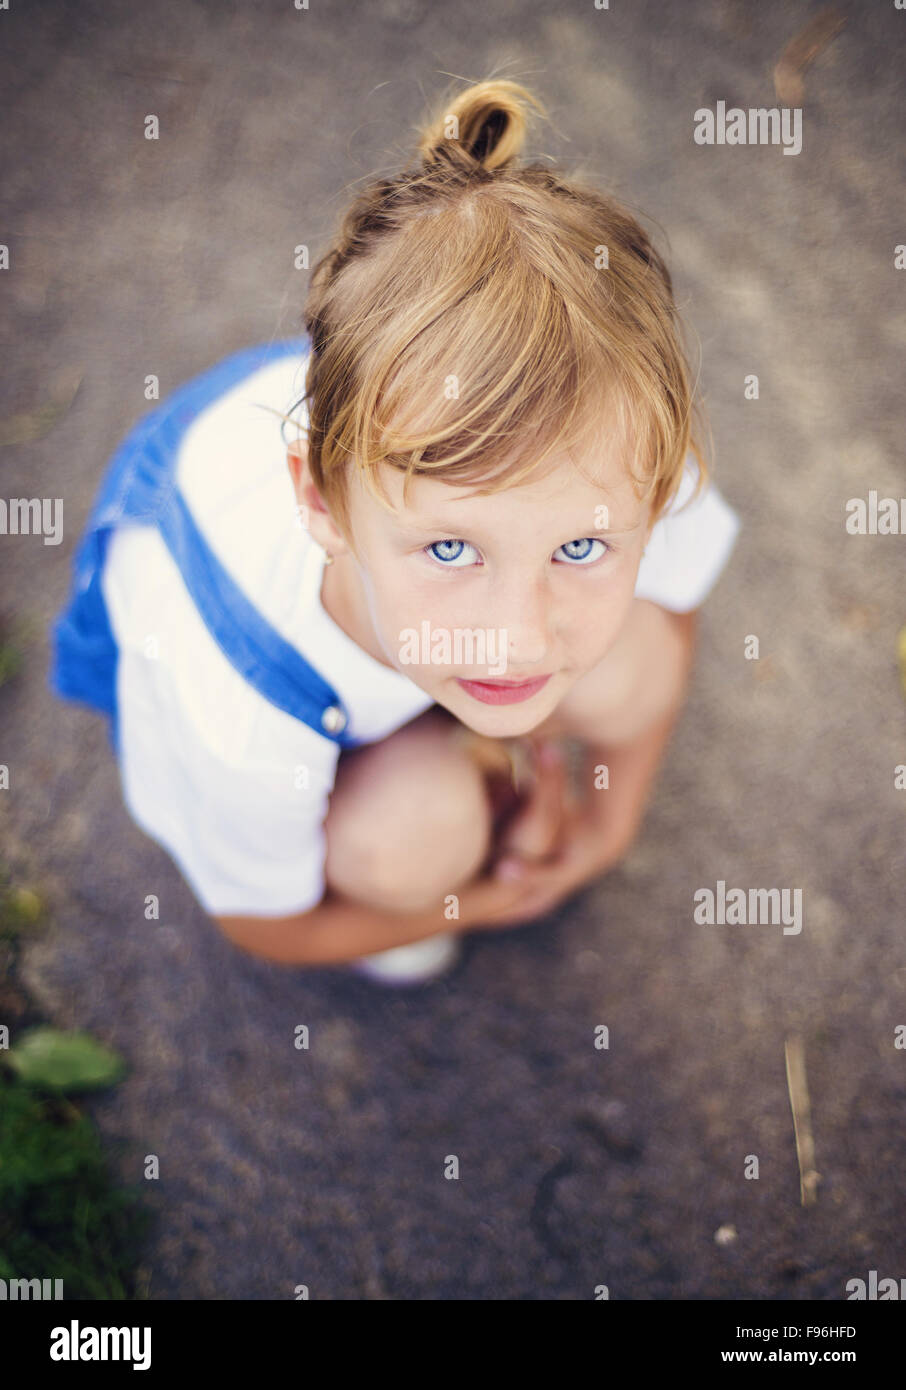 Traurig, kleines Mädchen mit blauen Augen auf der Straße hocken. Stockfoto